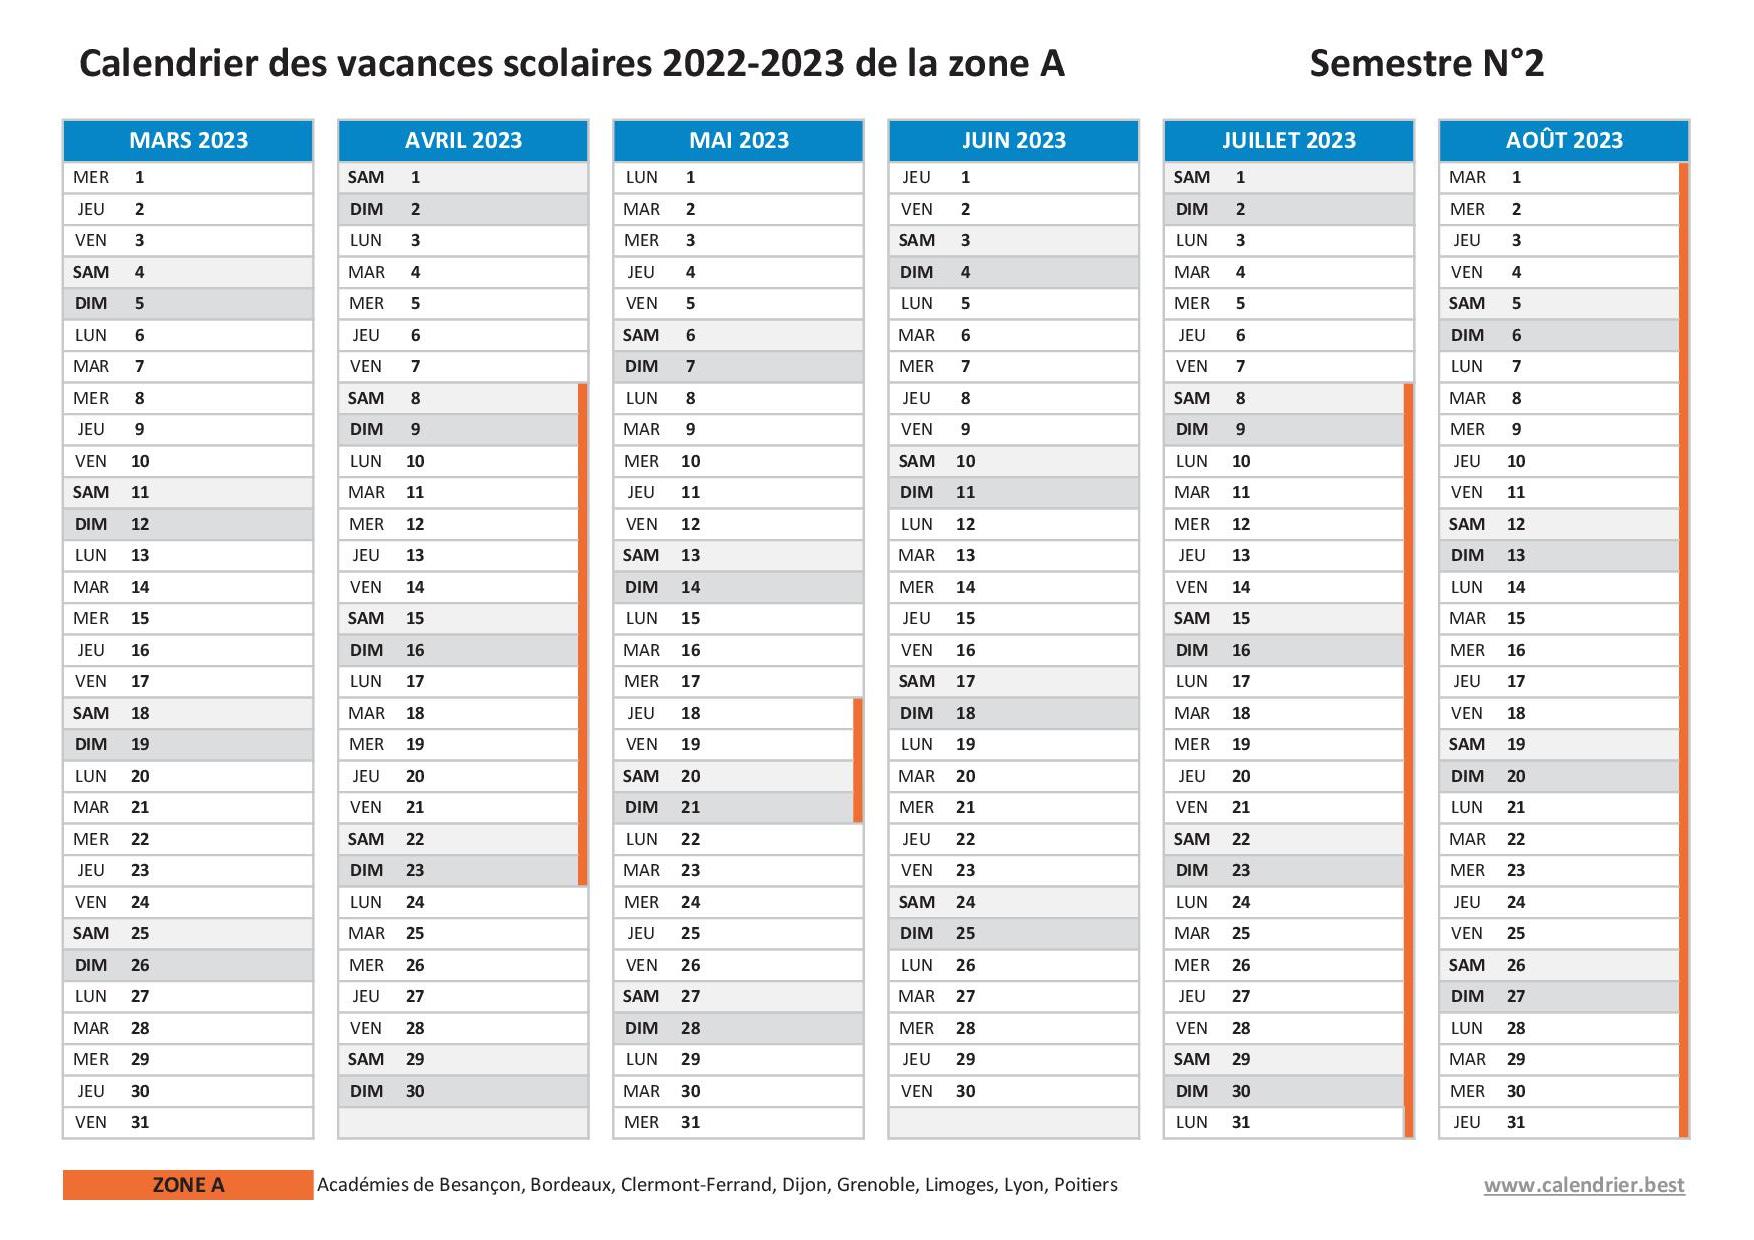 Calendrier scolaire 2022-2023 de la zone A - Semestre 2